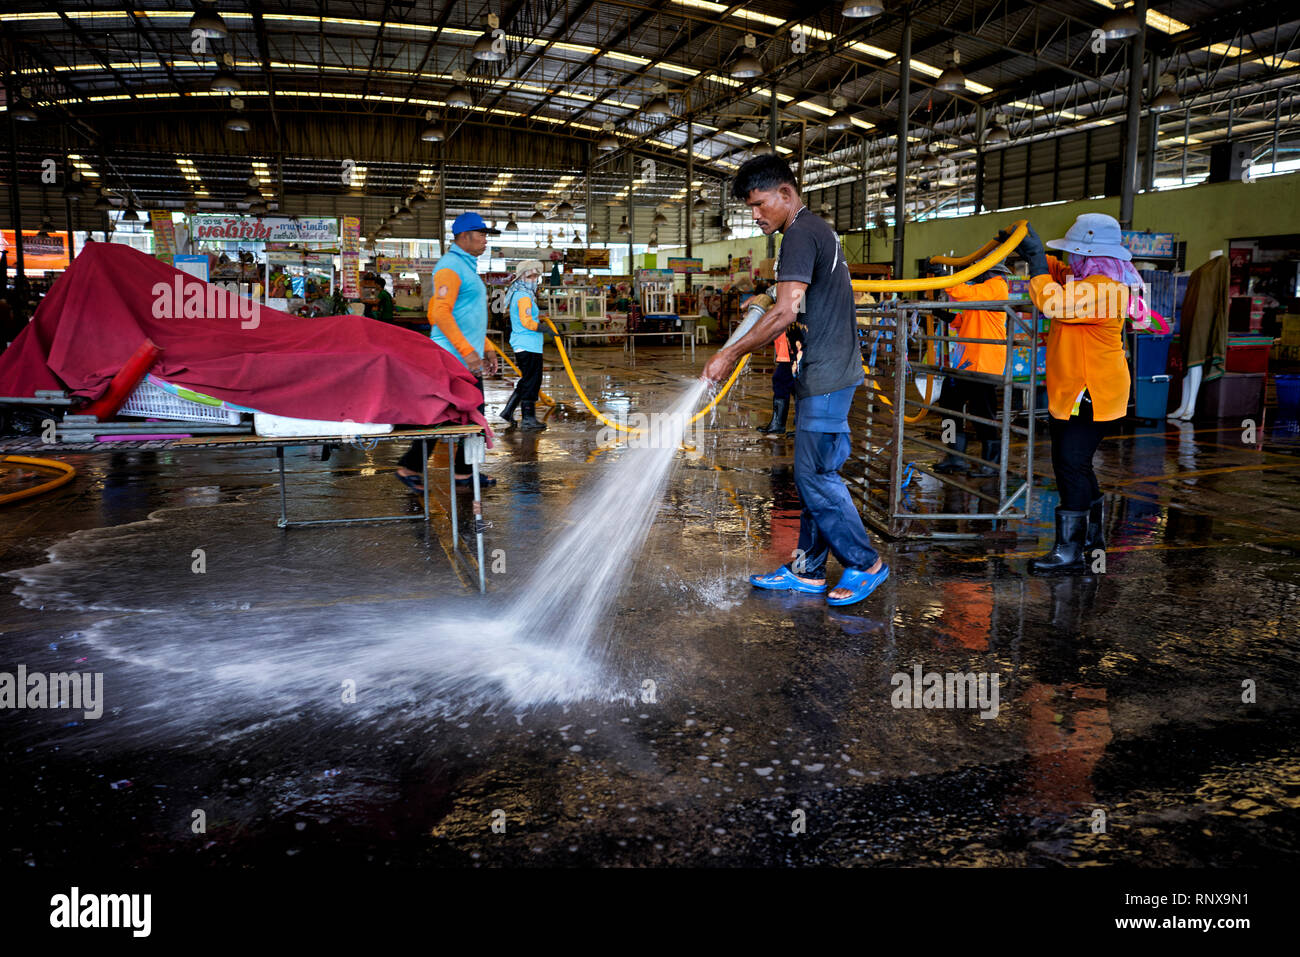 Straßenreinigung mit einem Gartenschlauch zu einem Thailand markt Veranstaltungsort. Stockfoto